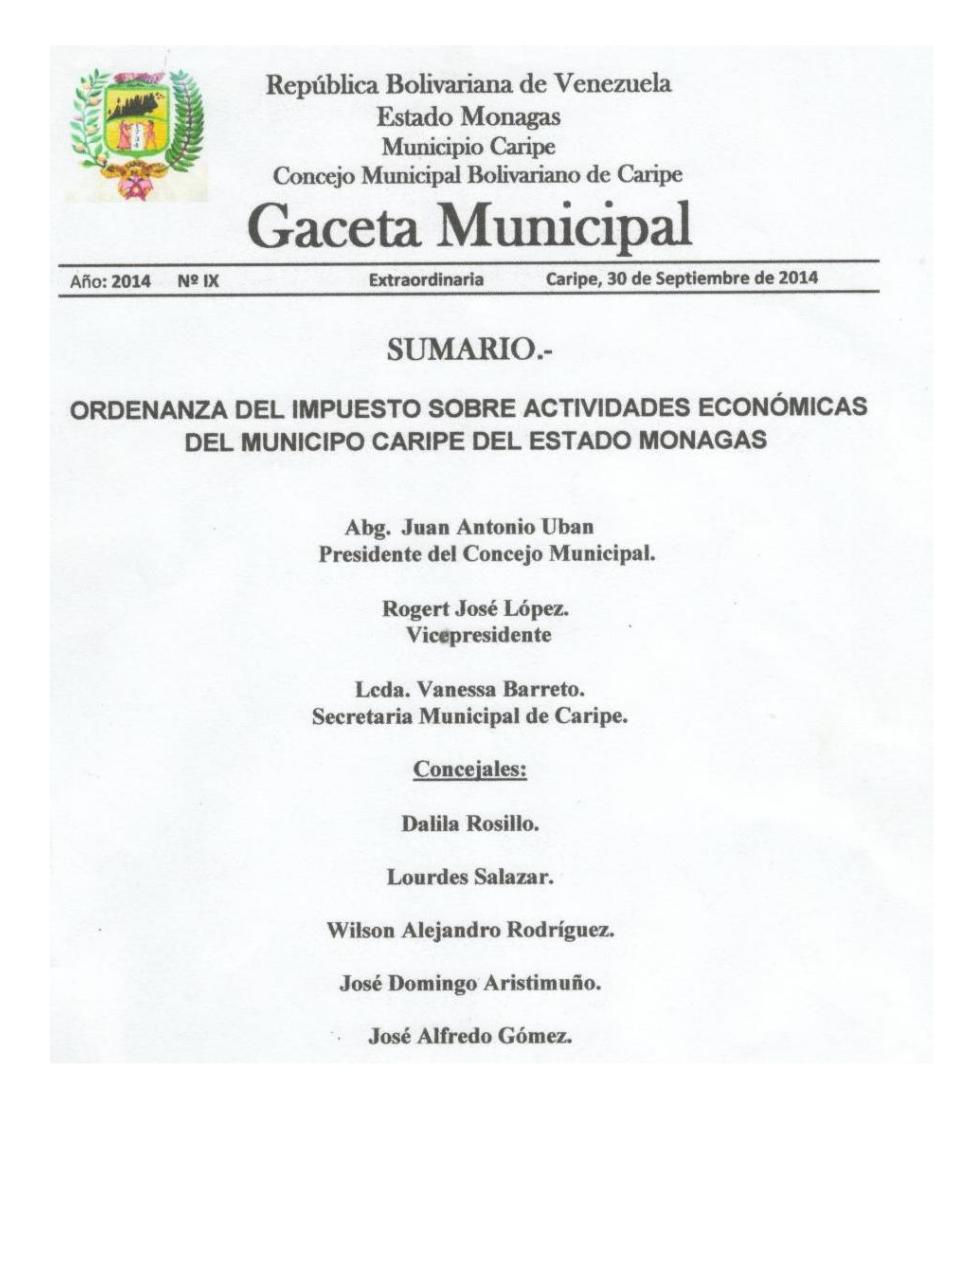 Ordenanza de Actividades Economicas Municipio Caripe.pdf - página 1/54